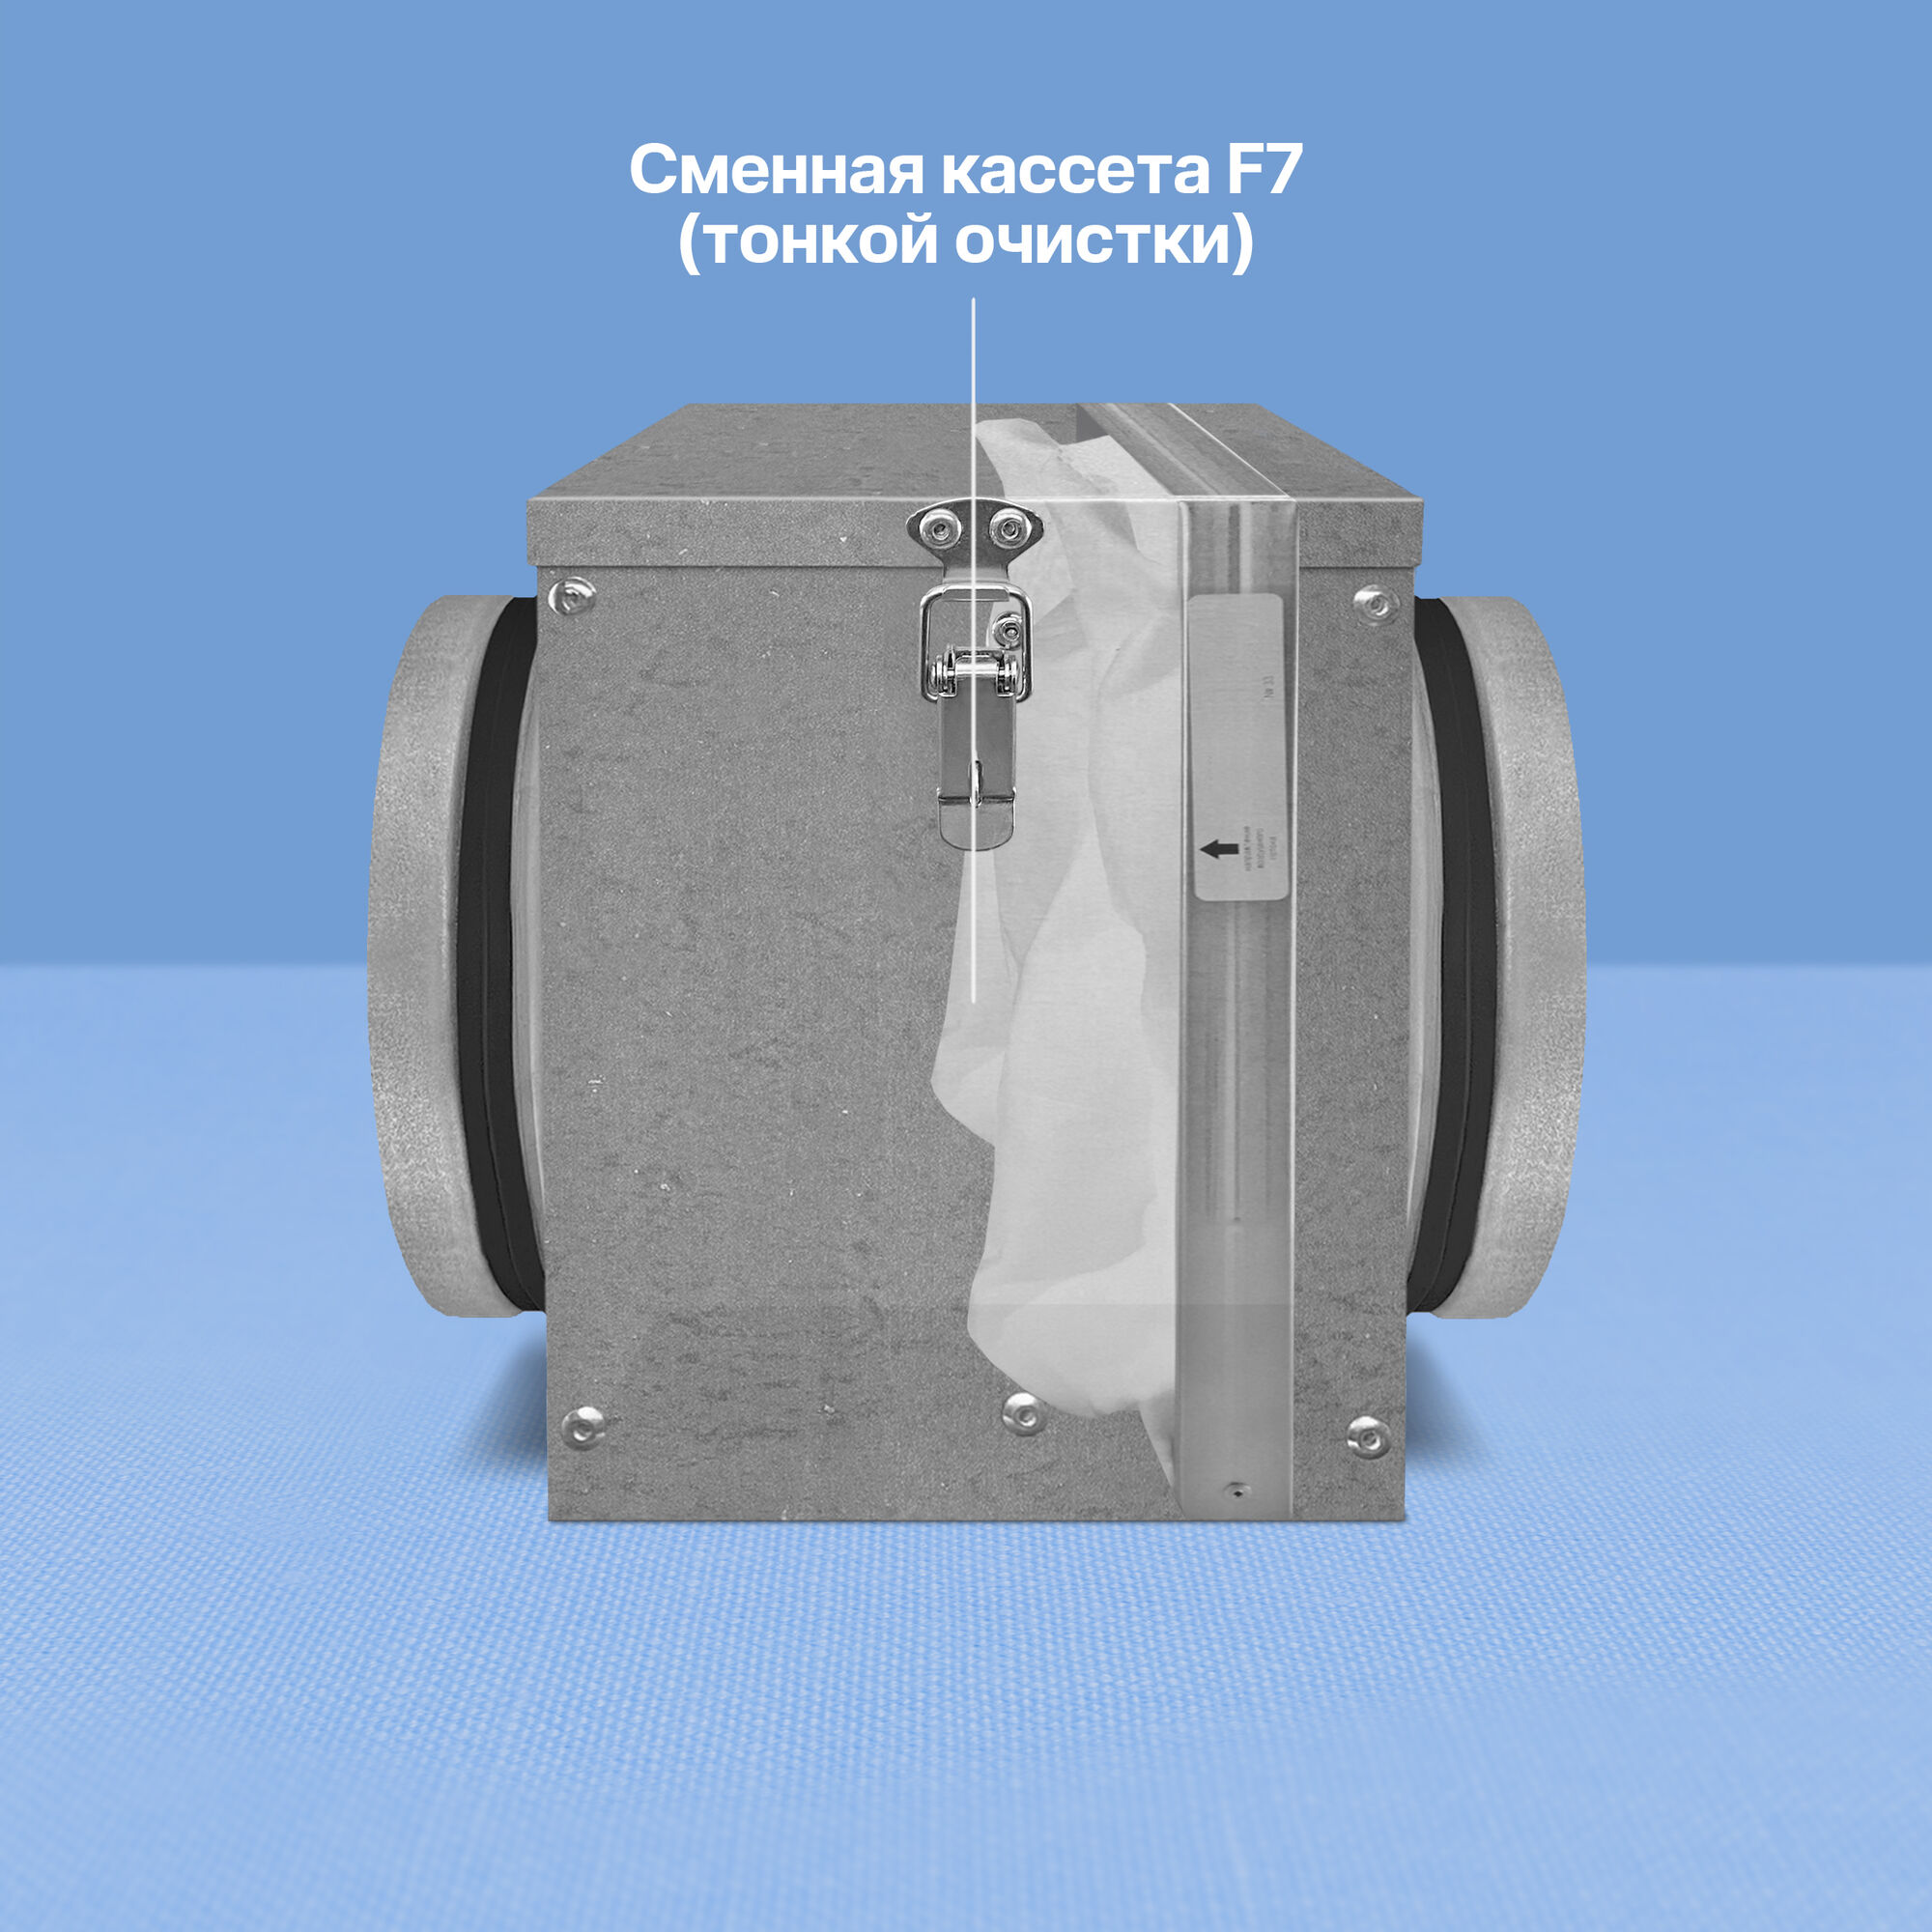 Фильтр компактный 315 (с кассетой F7) 2